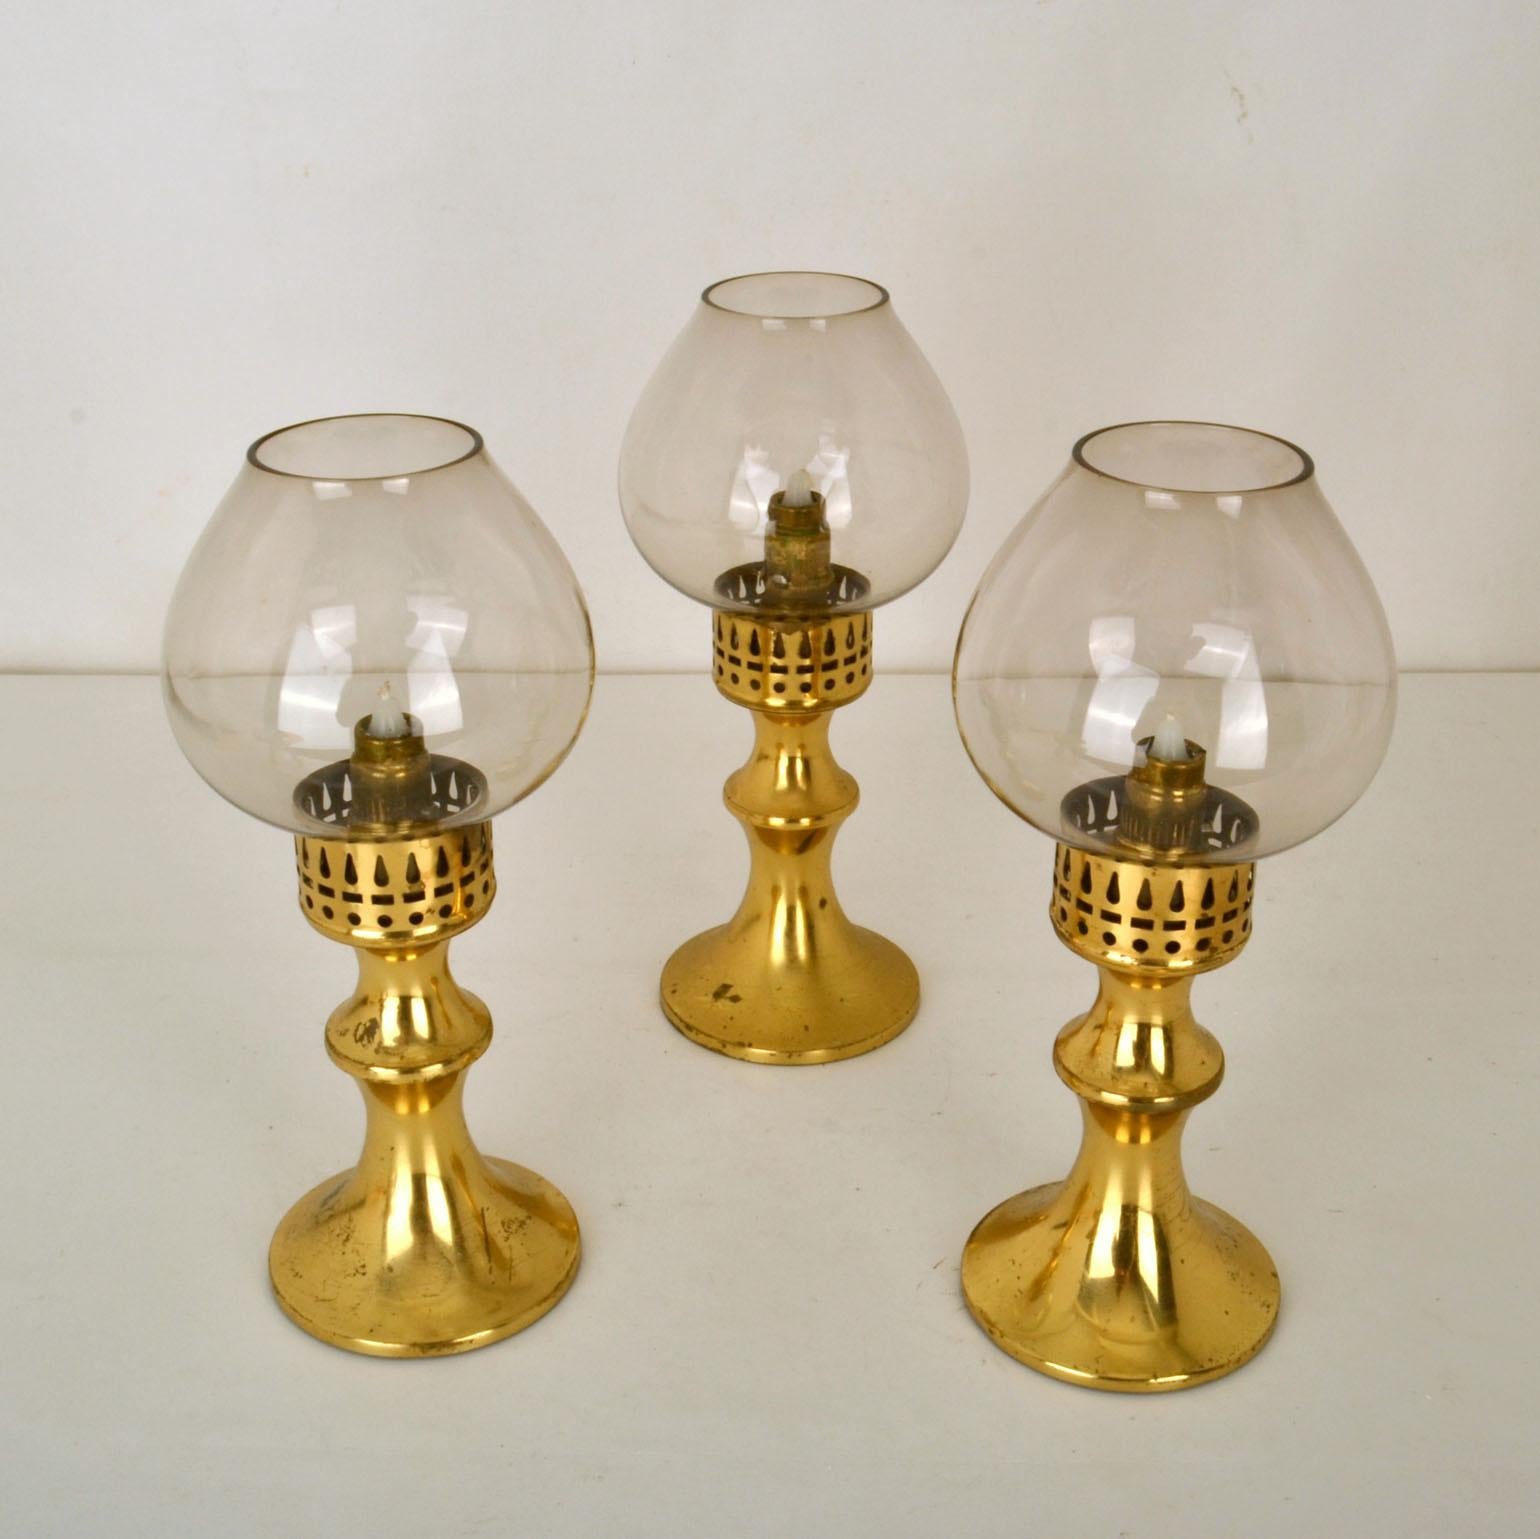 Satz von drei Kerzenhaltern aus Messing mit getönten Glasdiffusoren, Scandinavian Modern, 1960er Jahre. Sie sind für den Innen- und Außeneinsatz geeignet.
Sie haben ein cleveres internes Federsystem zum Hochschieben der Kerzen, so dass es aussieht,